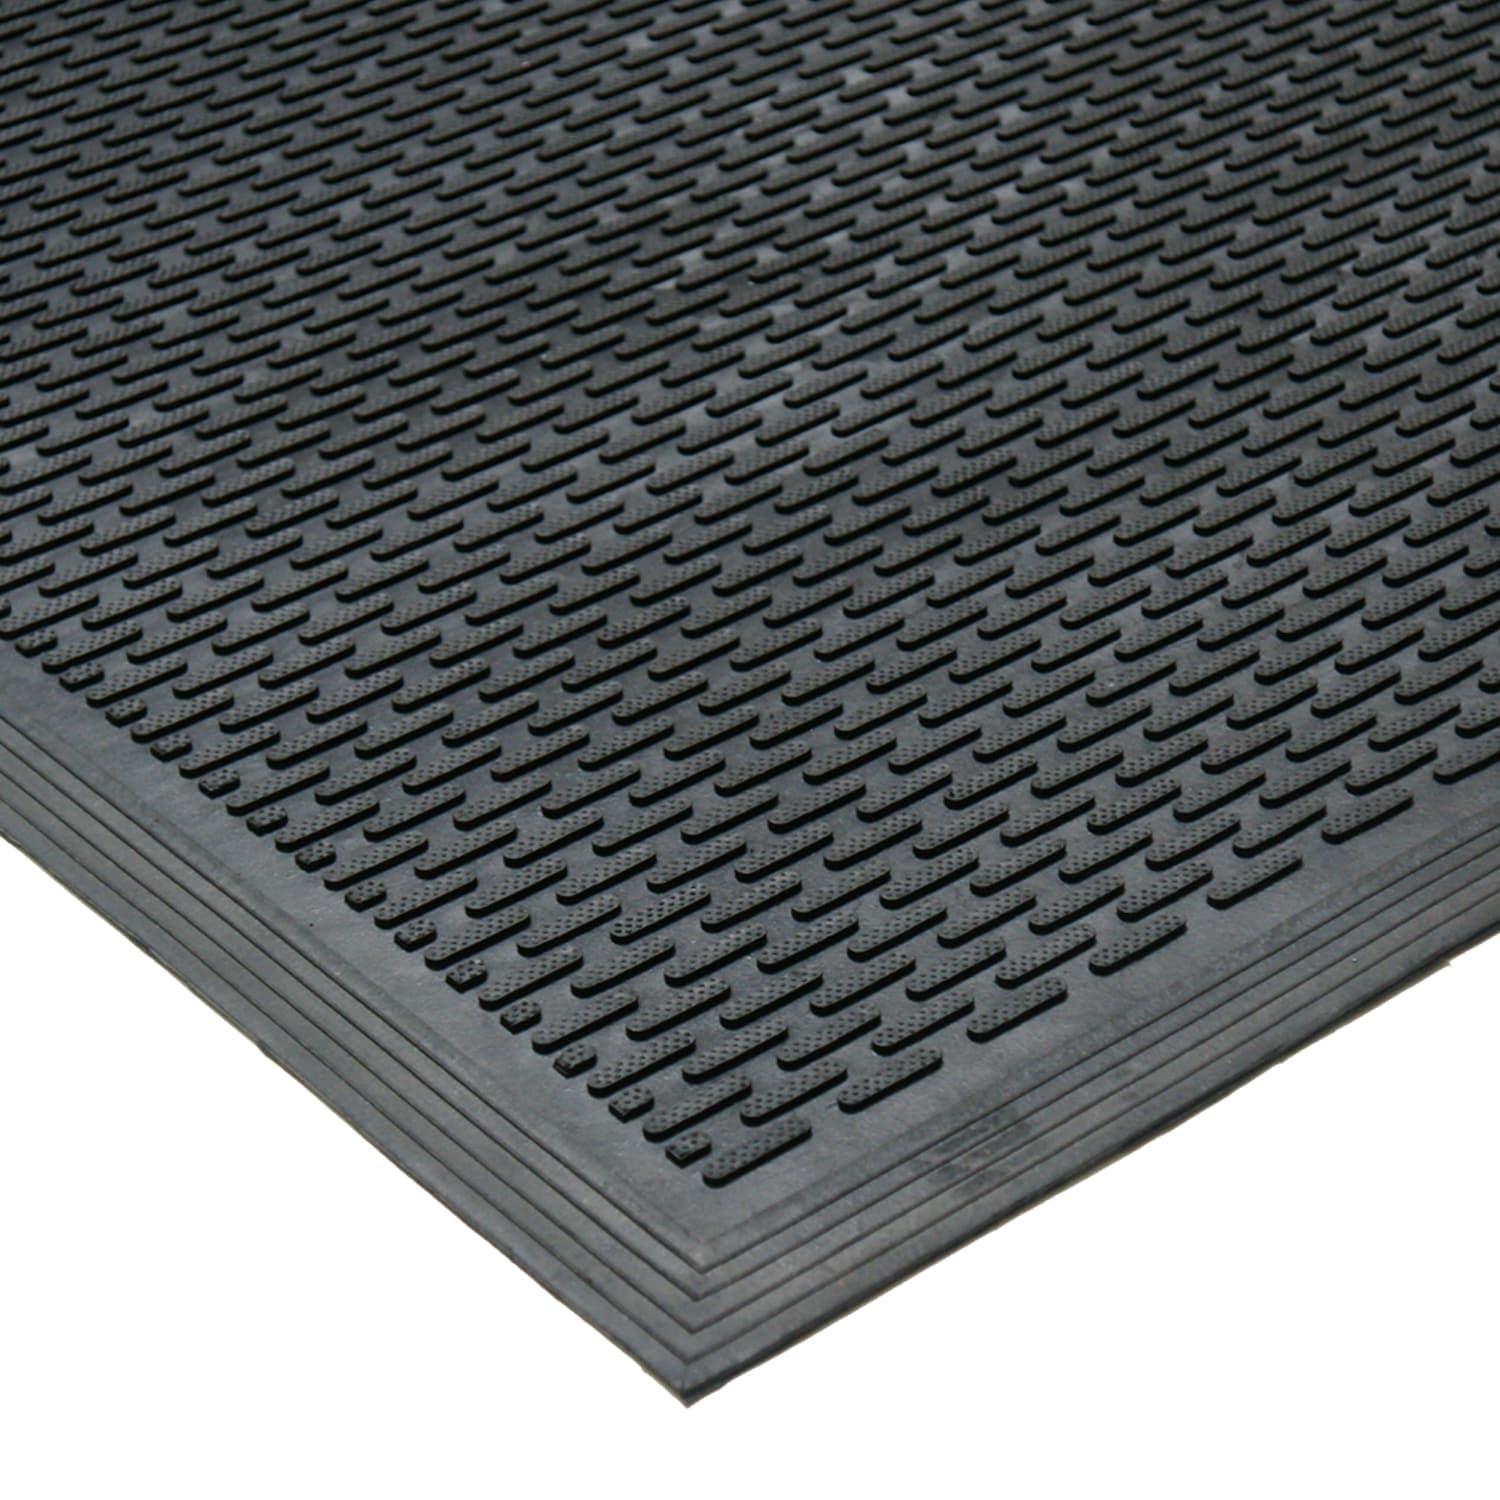 Solid Rubber Scraper Mat - Black - 3' x 5' - Indoor/Outdoor